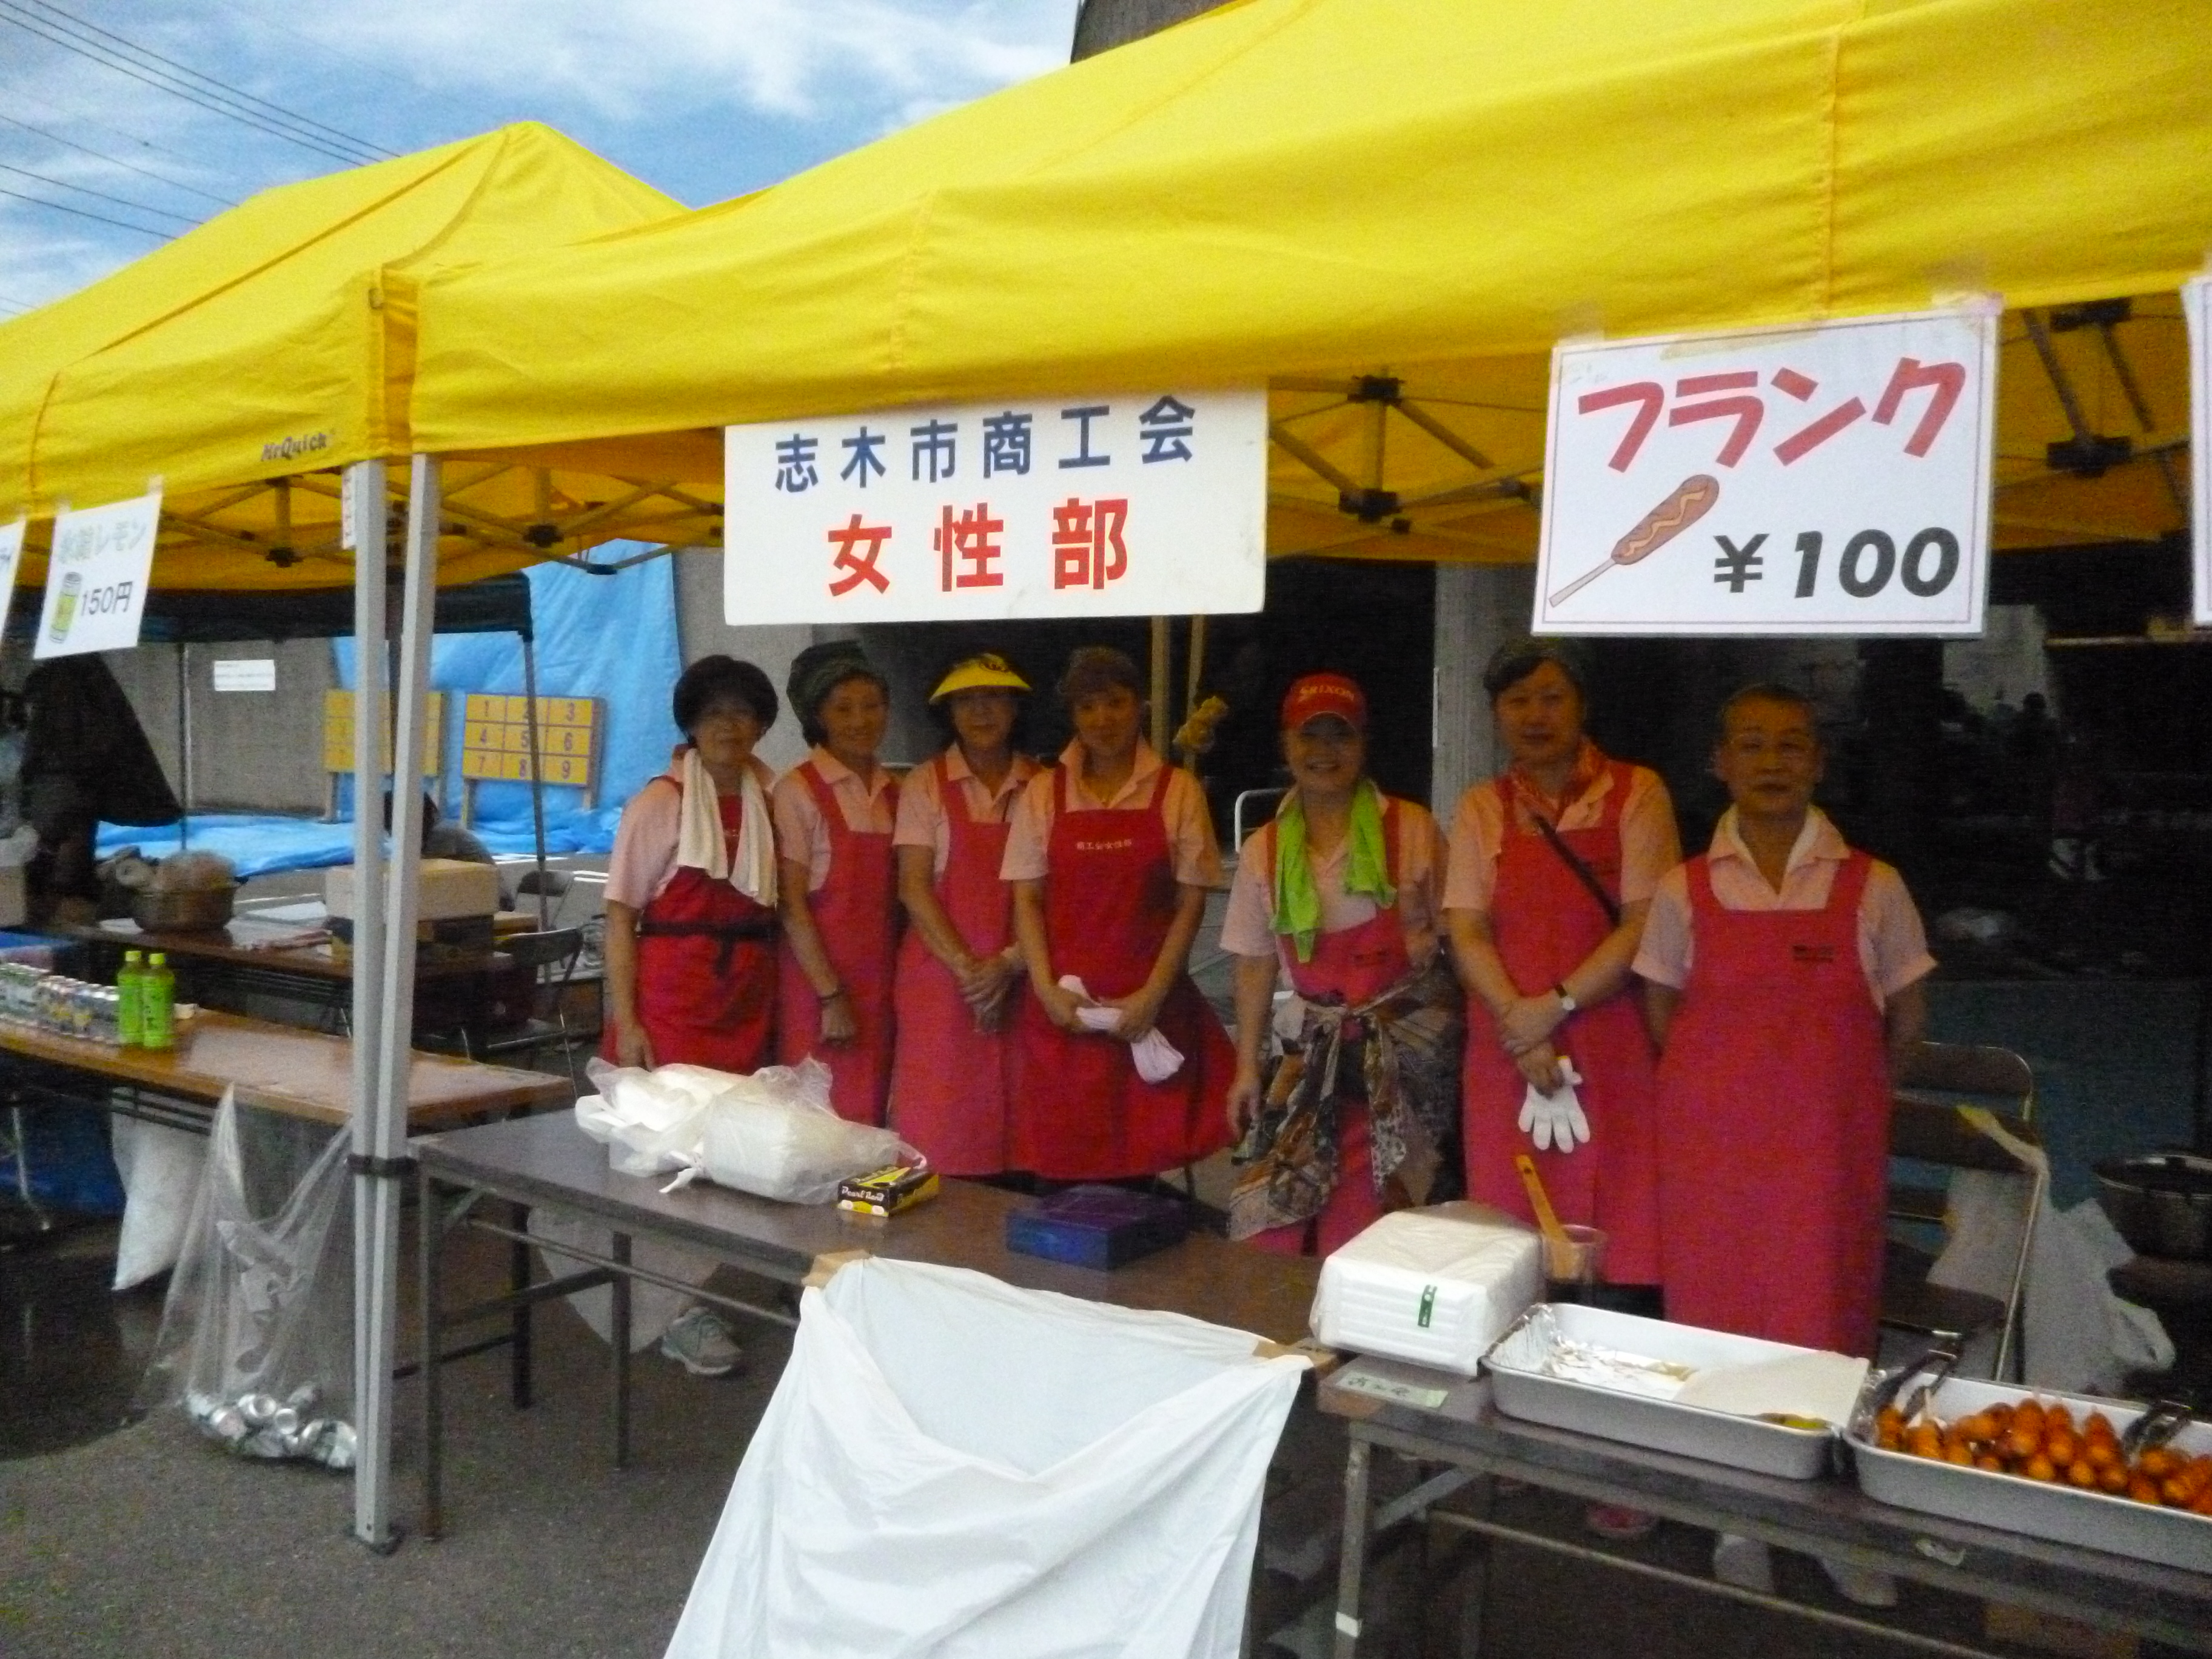 平成28年7月31日 日 女性部ビアガーデン開催 志木市商工会